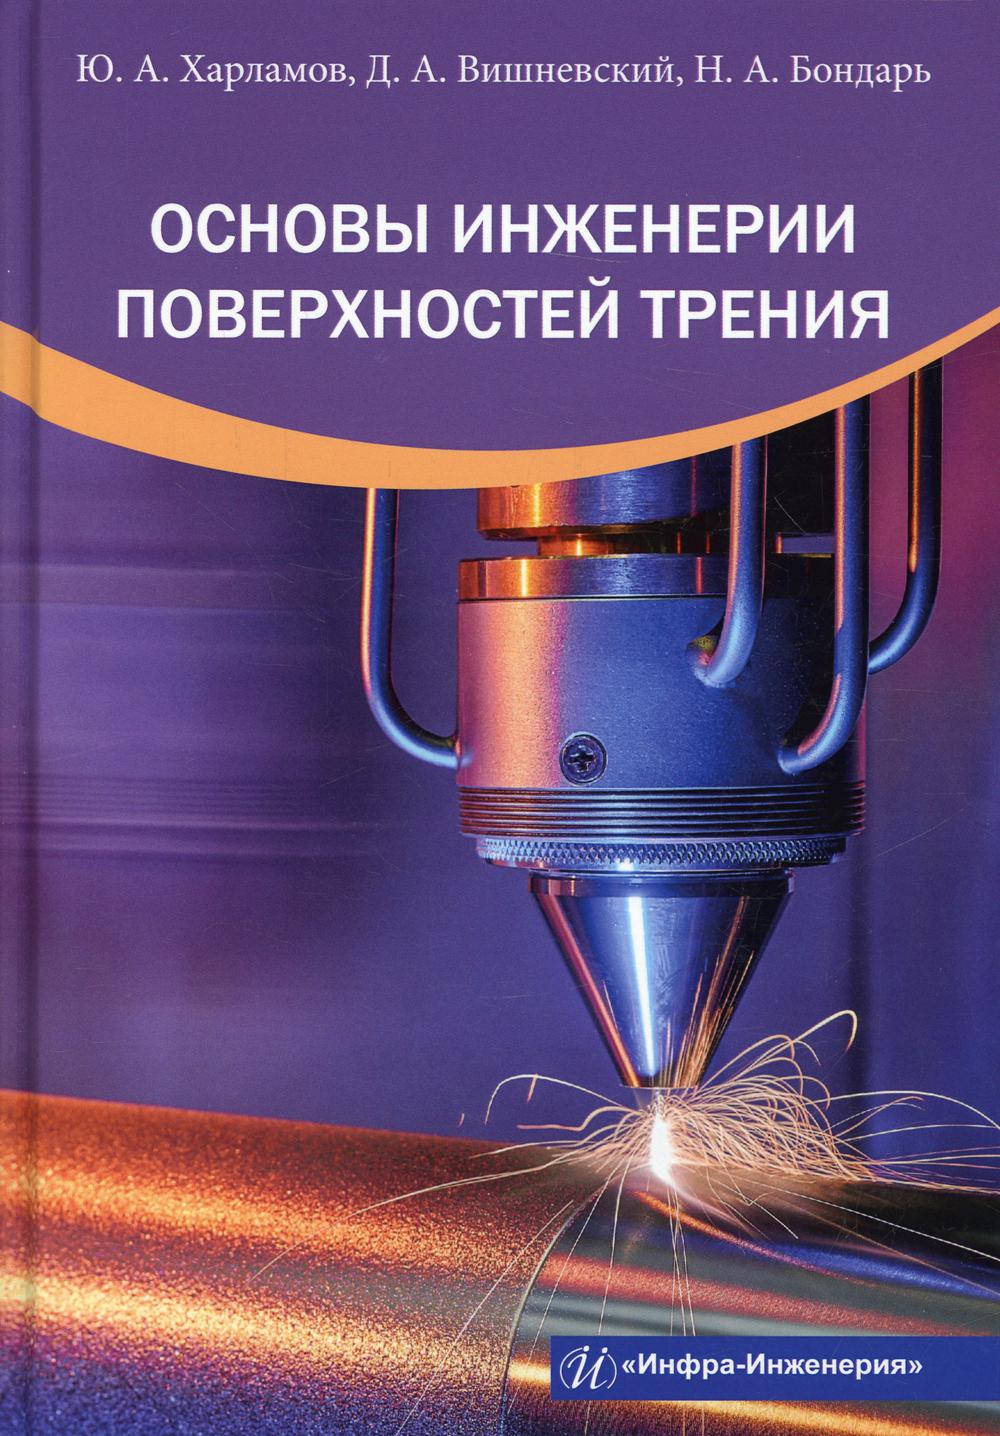 фото Книга основы инженерии поверхностей трения инфра-инженерия